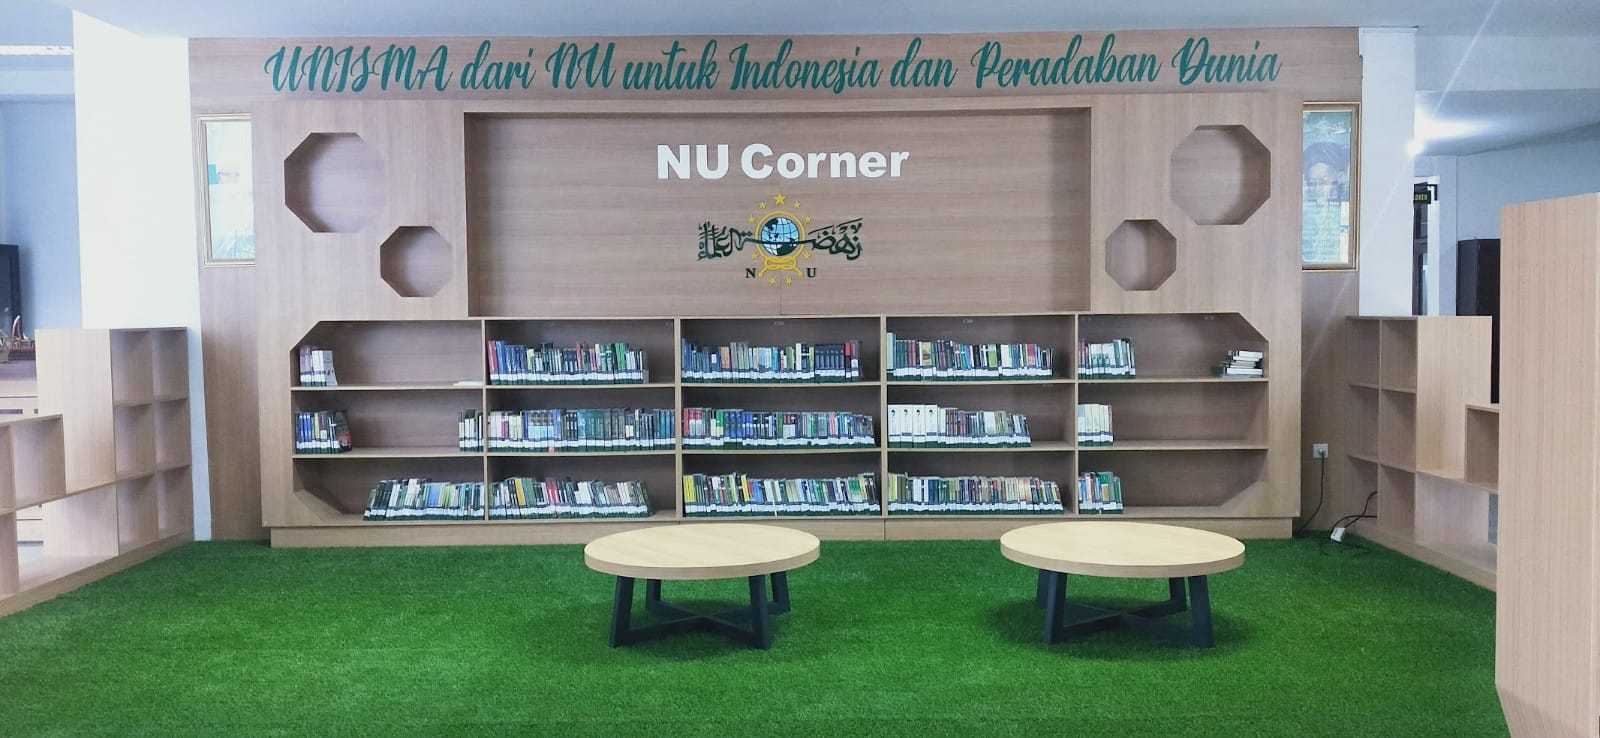 Perpustakaan Pusat Unisma Kota Malang yang dilengkapi spot NU Corner. (Foto: Feni Yusnia/Tugu Malang/Tugu Jatim)